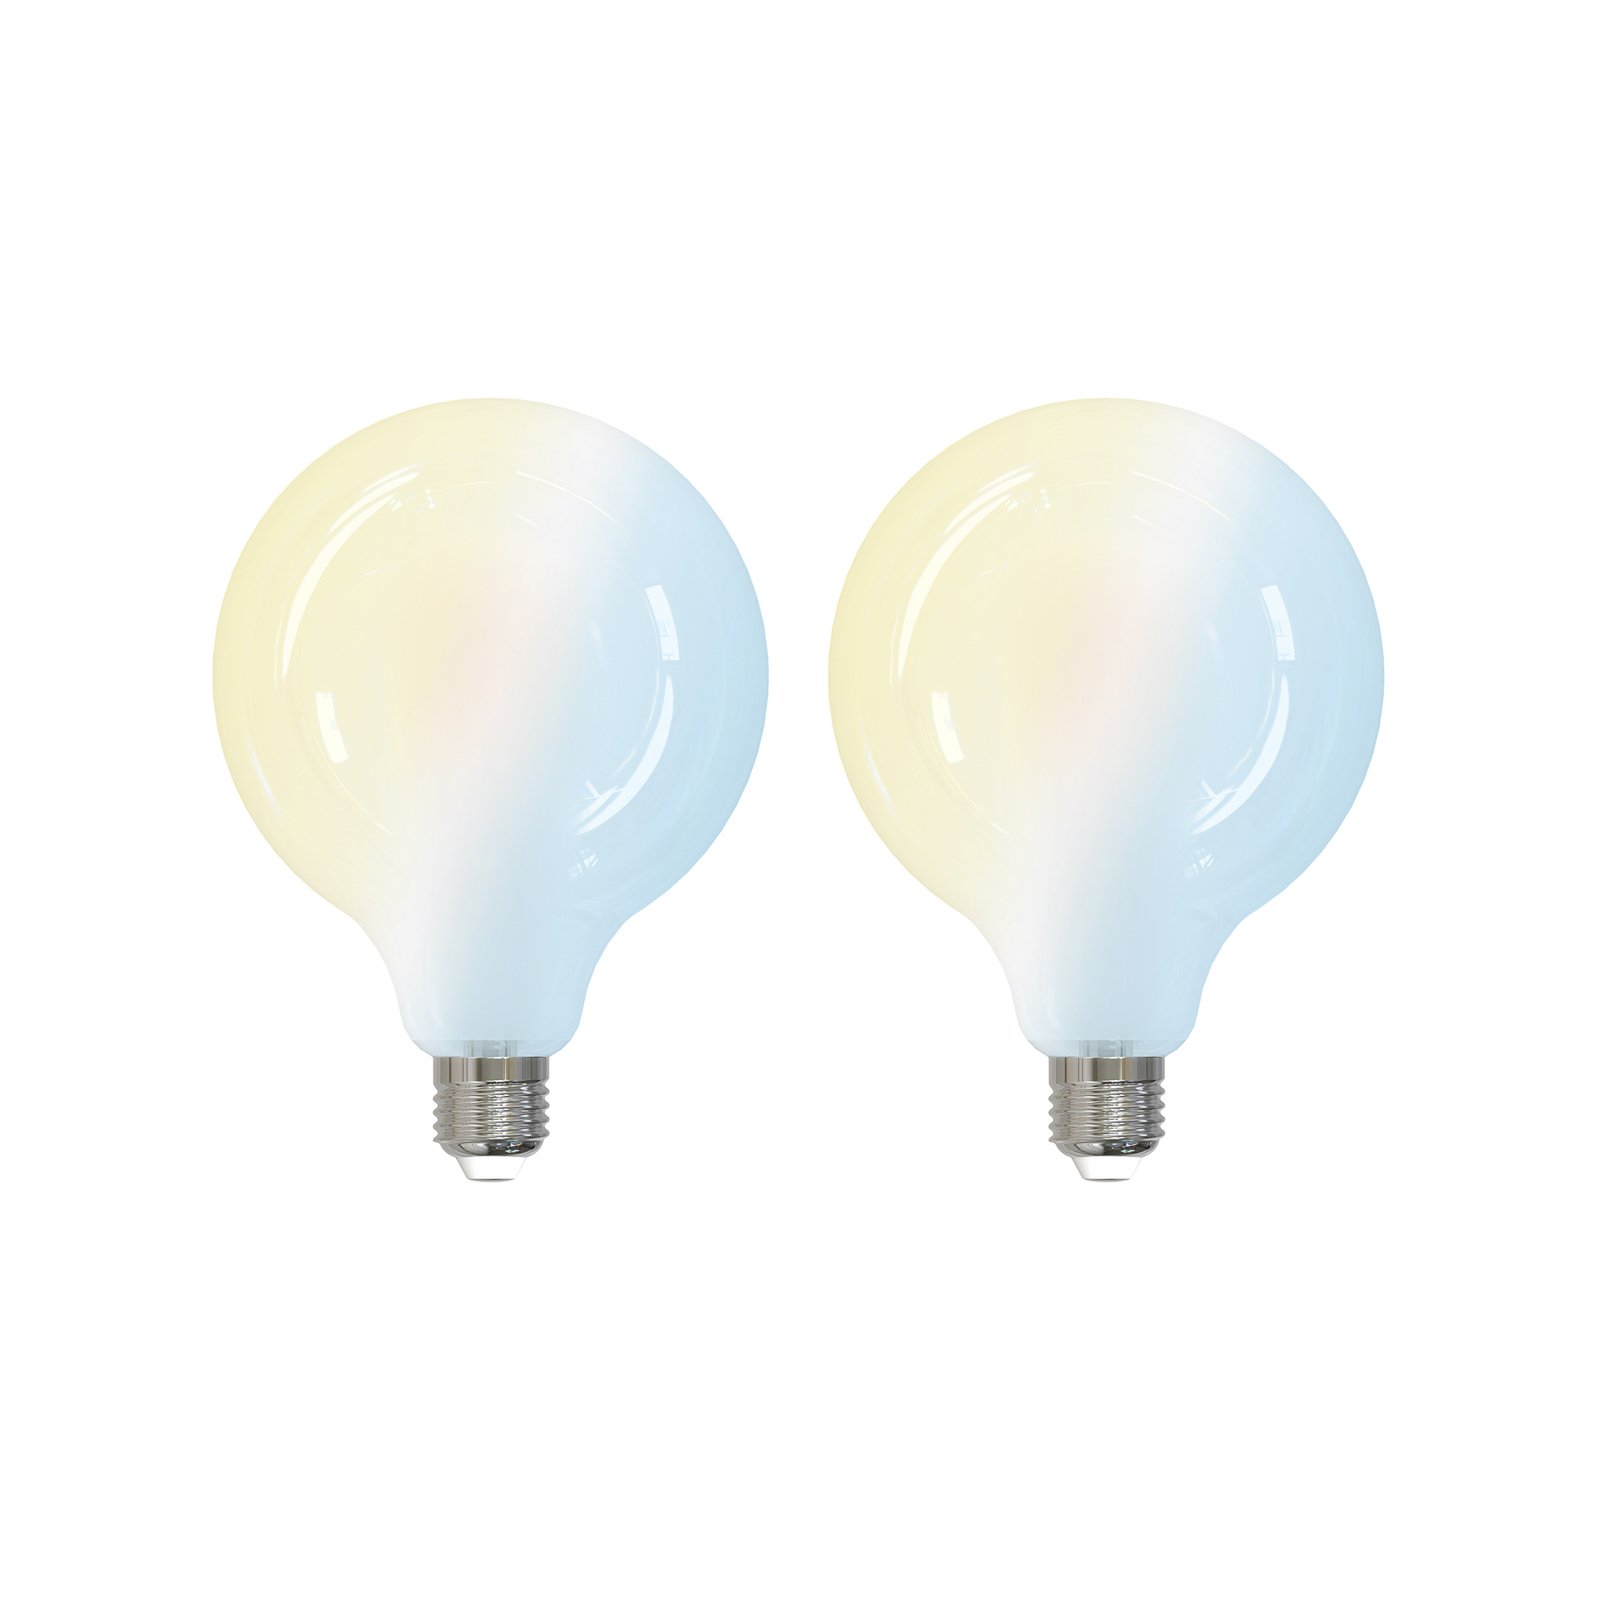 E27 G125 LED-Lampe 7W tunable white WLAN matt 2er